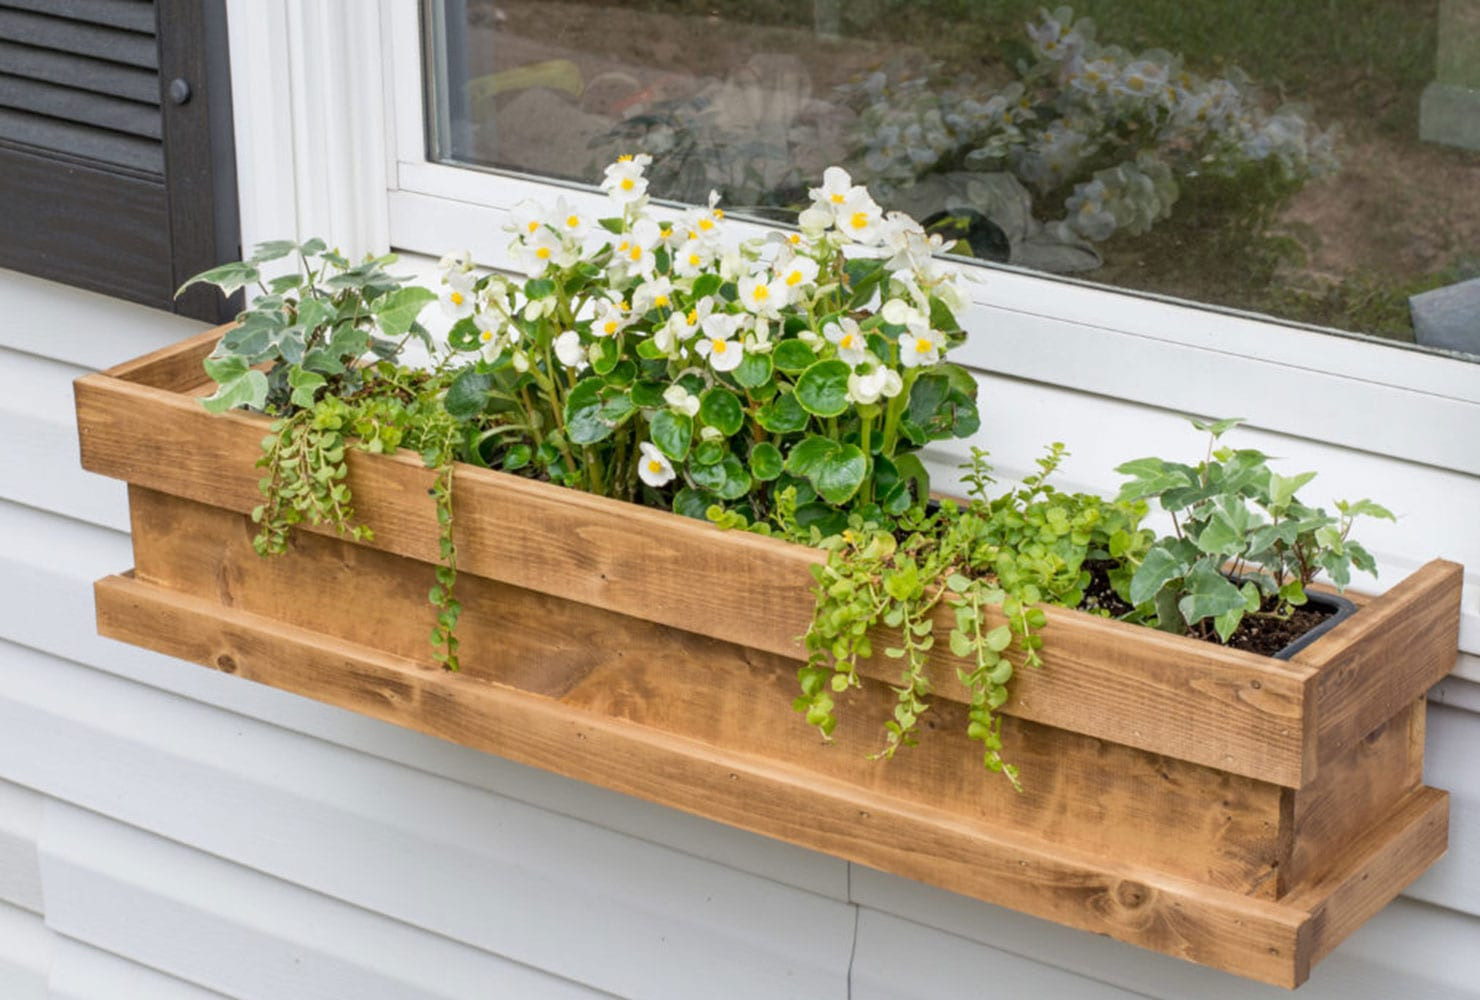 DIY Window Planter Boxes
 45 DIY Patio Ideas to Brighten Your Space